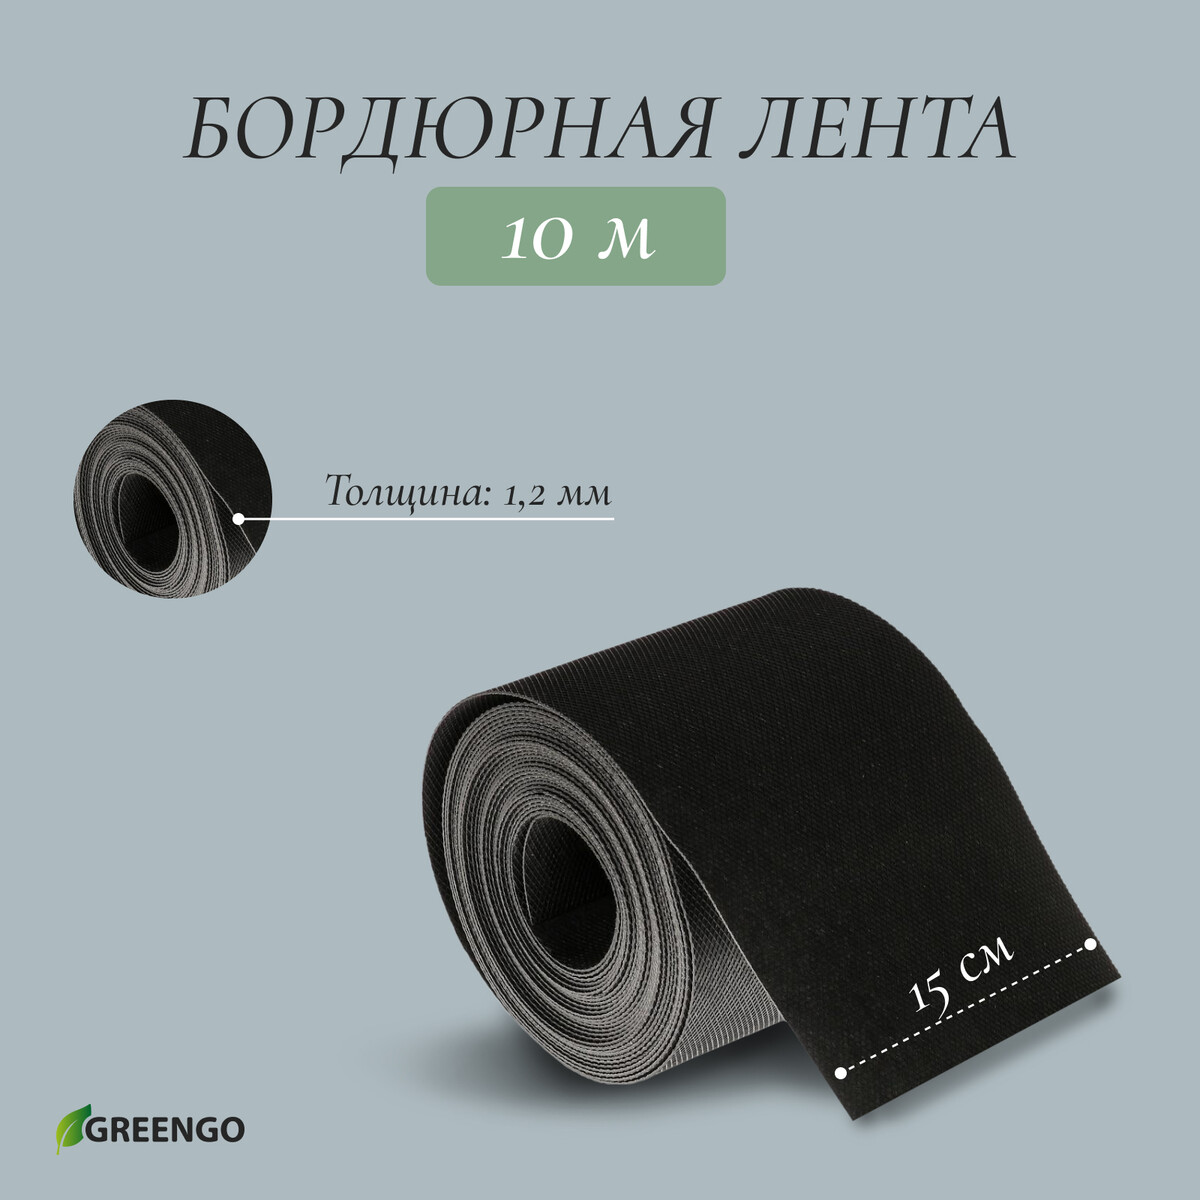 Лента бордюрная, 0.15 × 10 м, толщина 1.2 мм, пластиковая, черная, greengo кассета для рассады на 9 ячеек по 80 мл пластиковая черная 18 × 13 × 6 см greengo